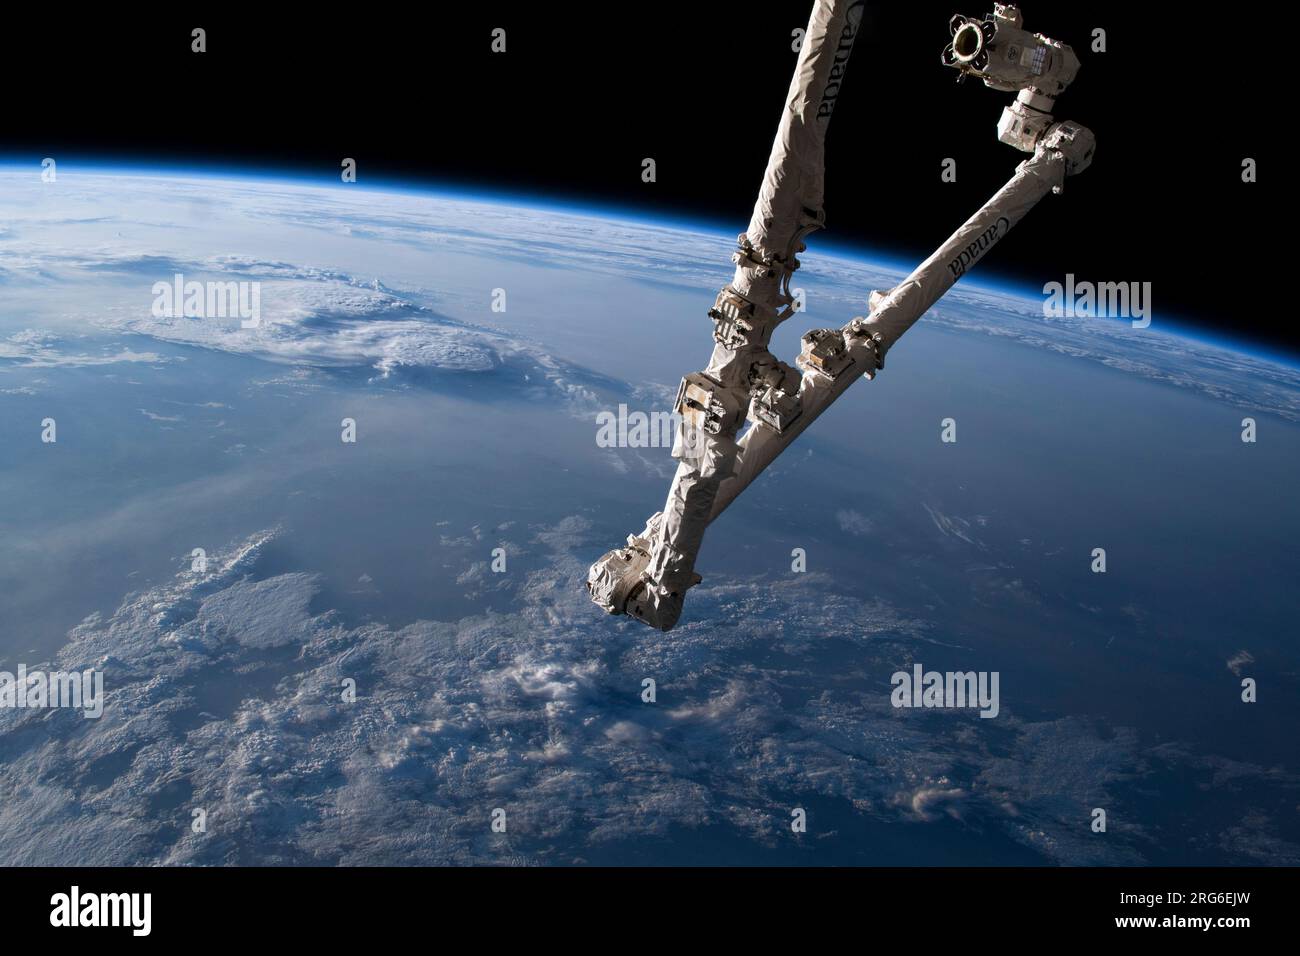 Il braccio robotico Canadarm2 come stazione spaziale Internazionale orbita sulla Mongolia. Foto Stock